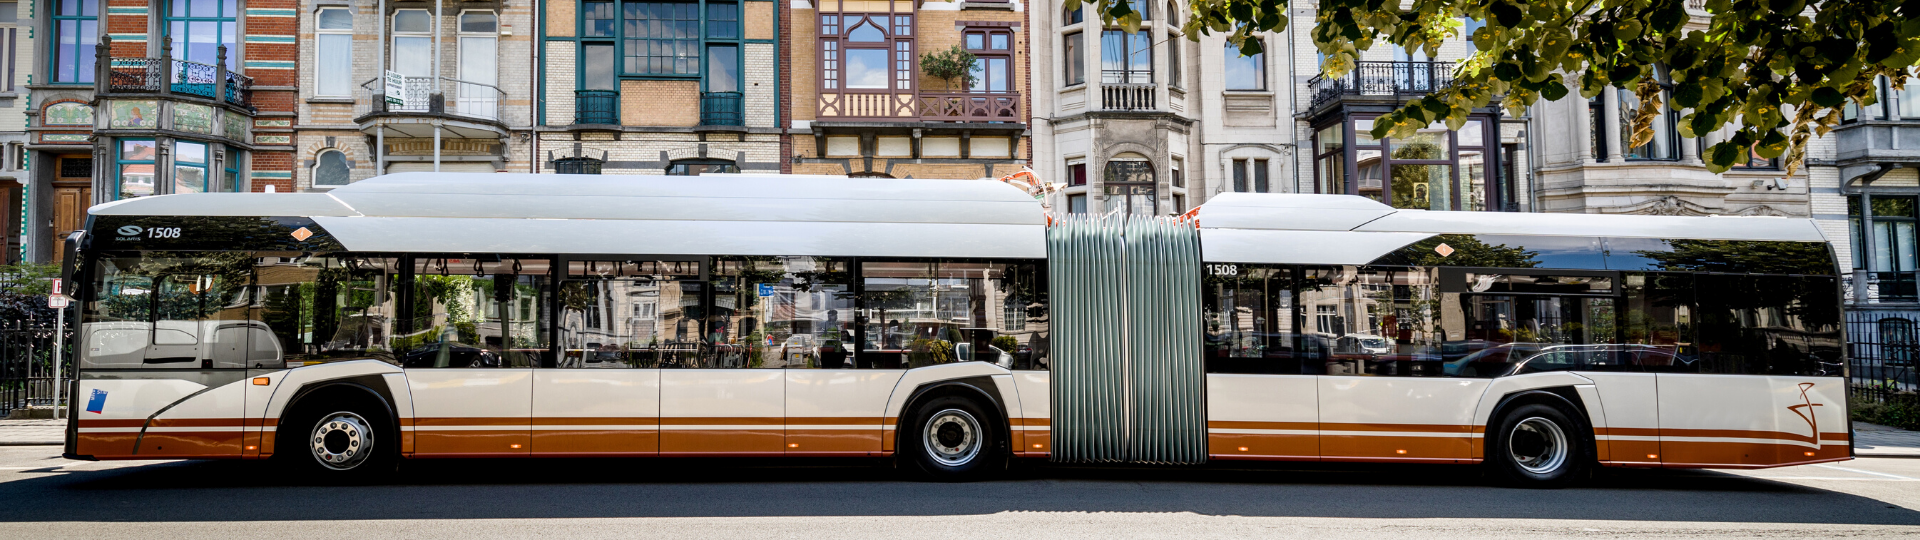 Die Stadt Craiova in Rumänien bestellt 16 gelenkige Elektrobusse